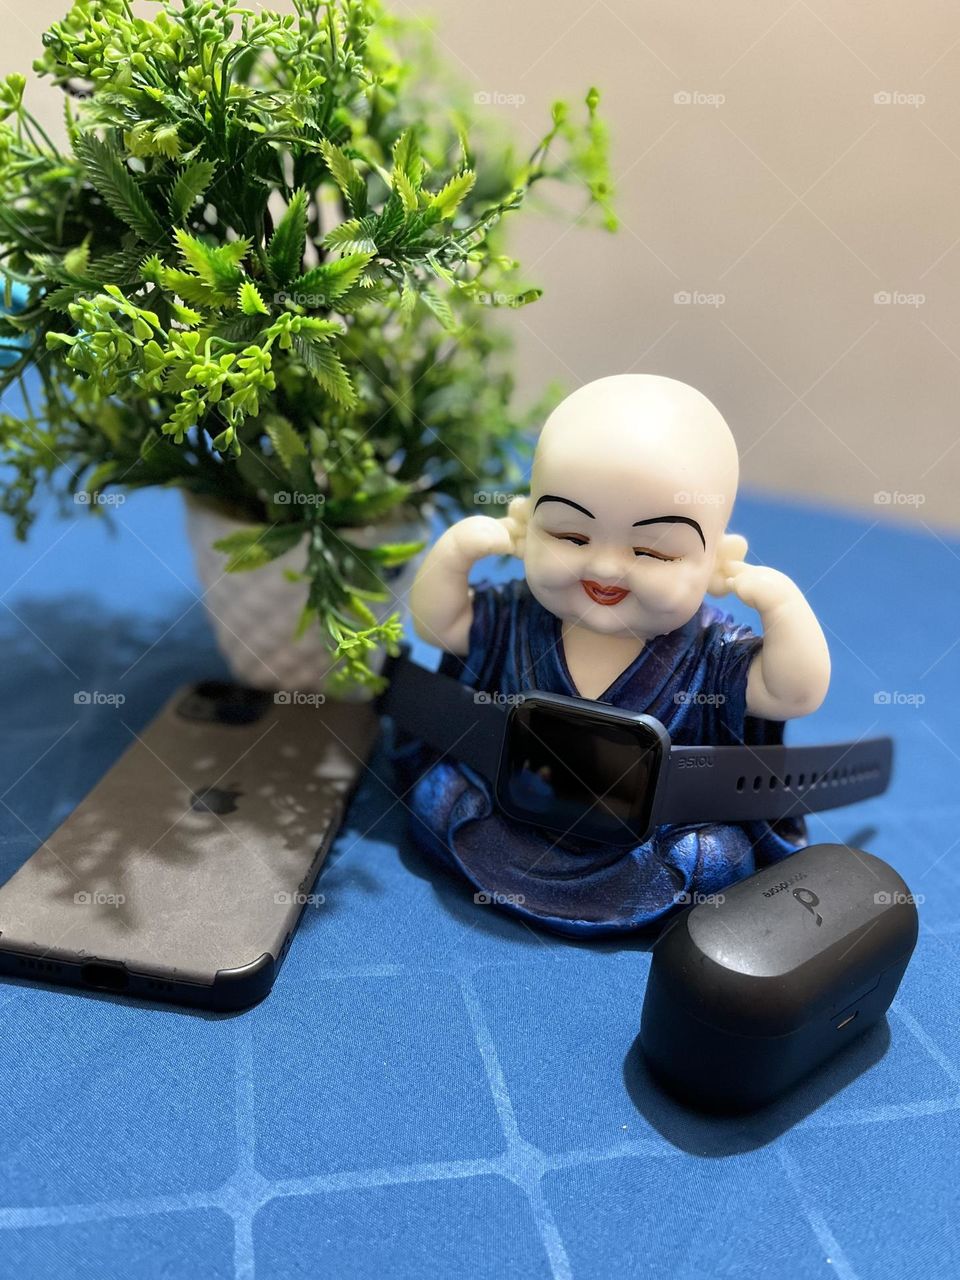 Chinese Ganesha Laughing Buddha gift